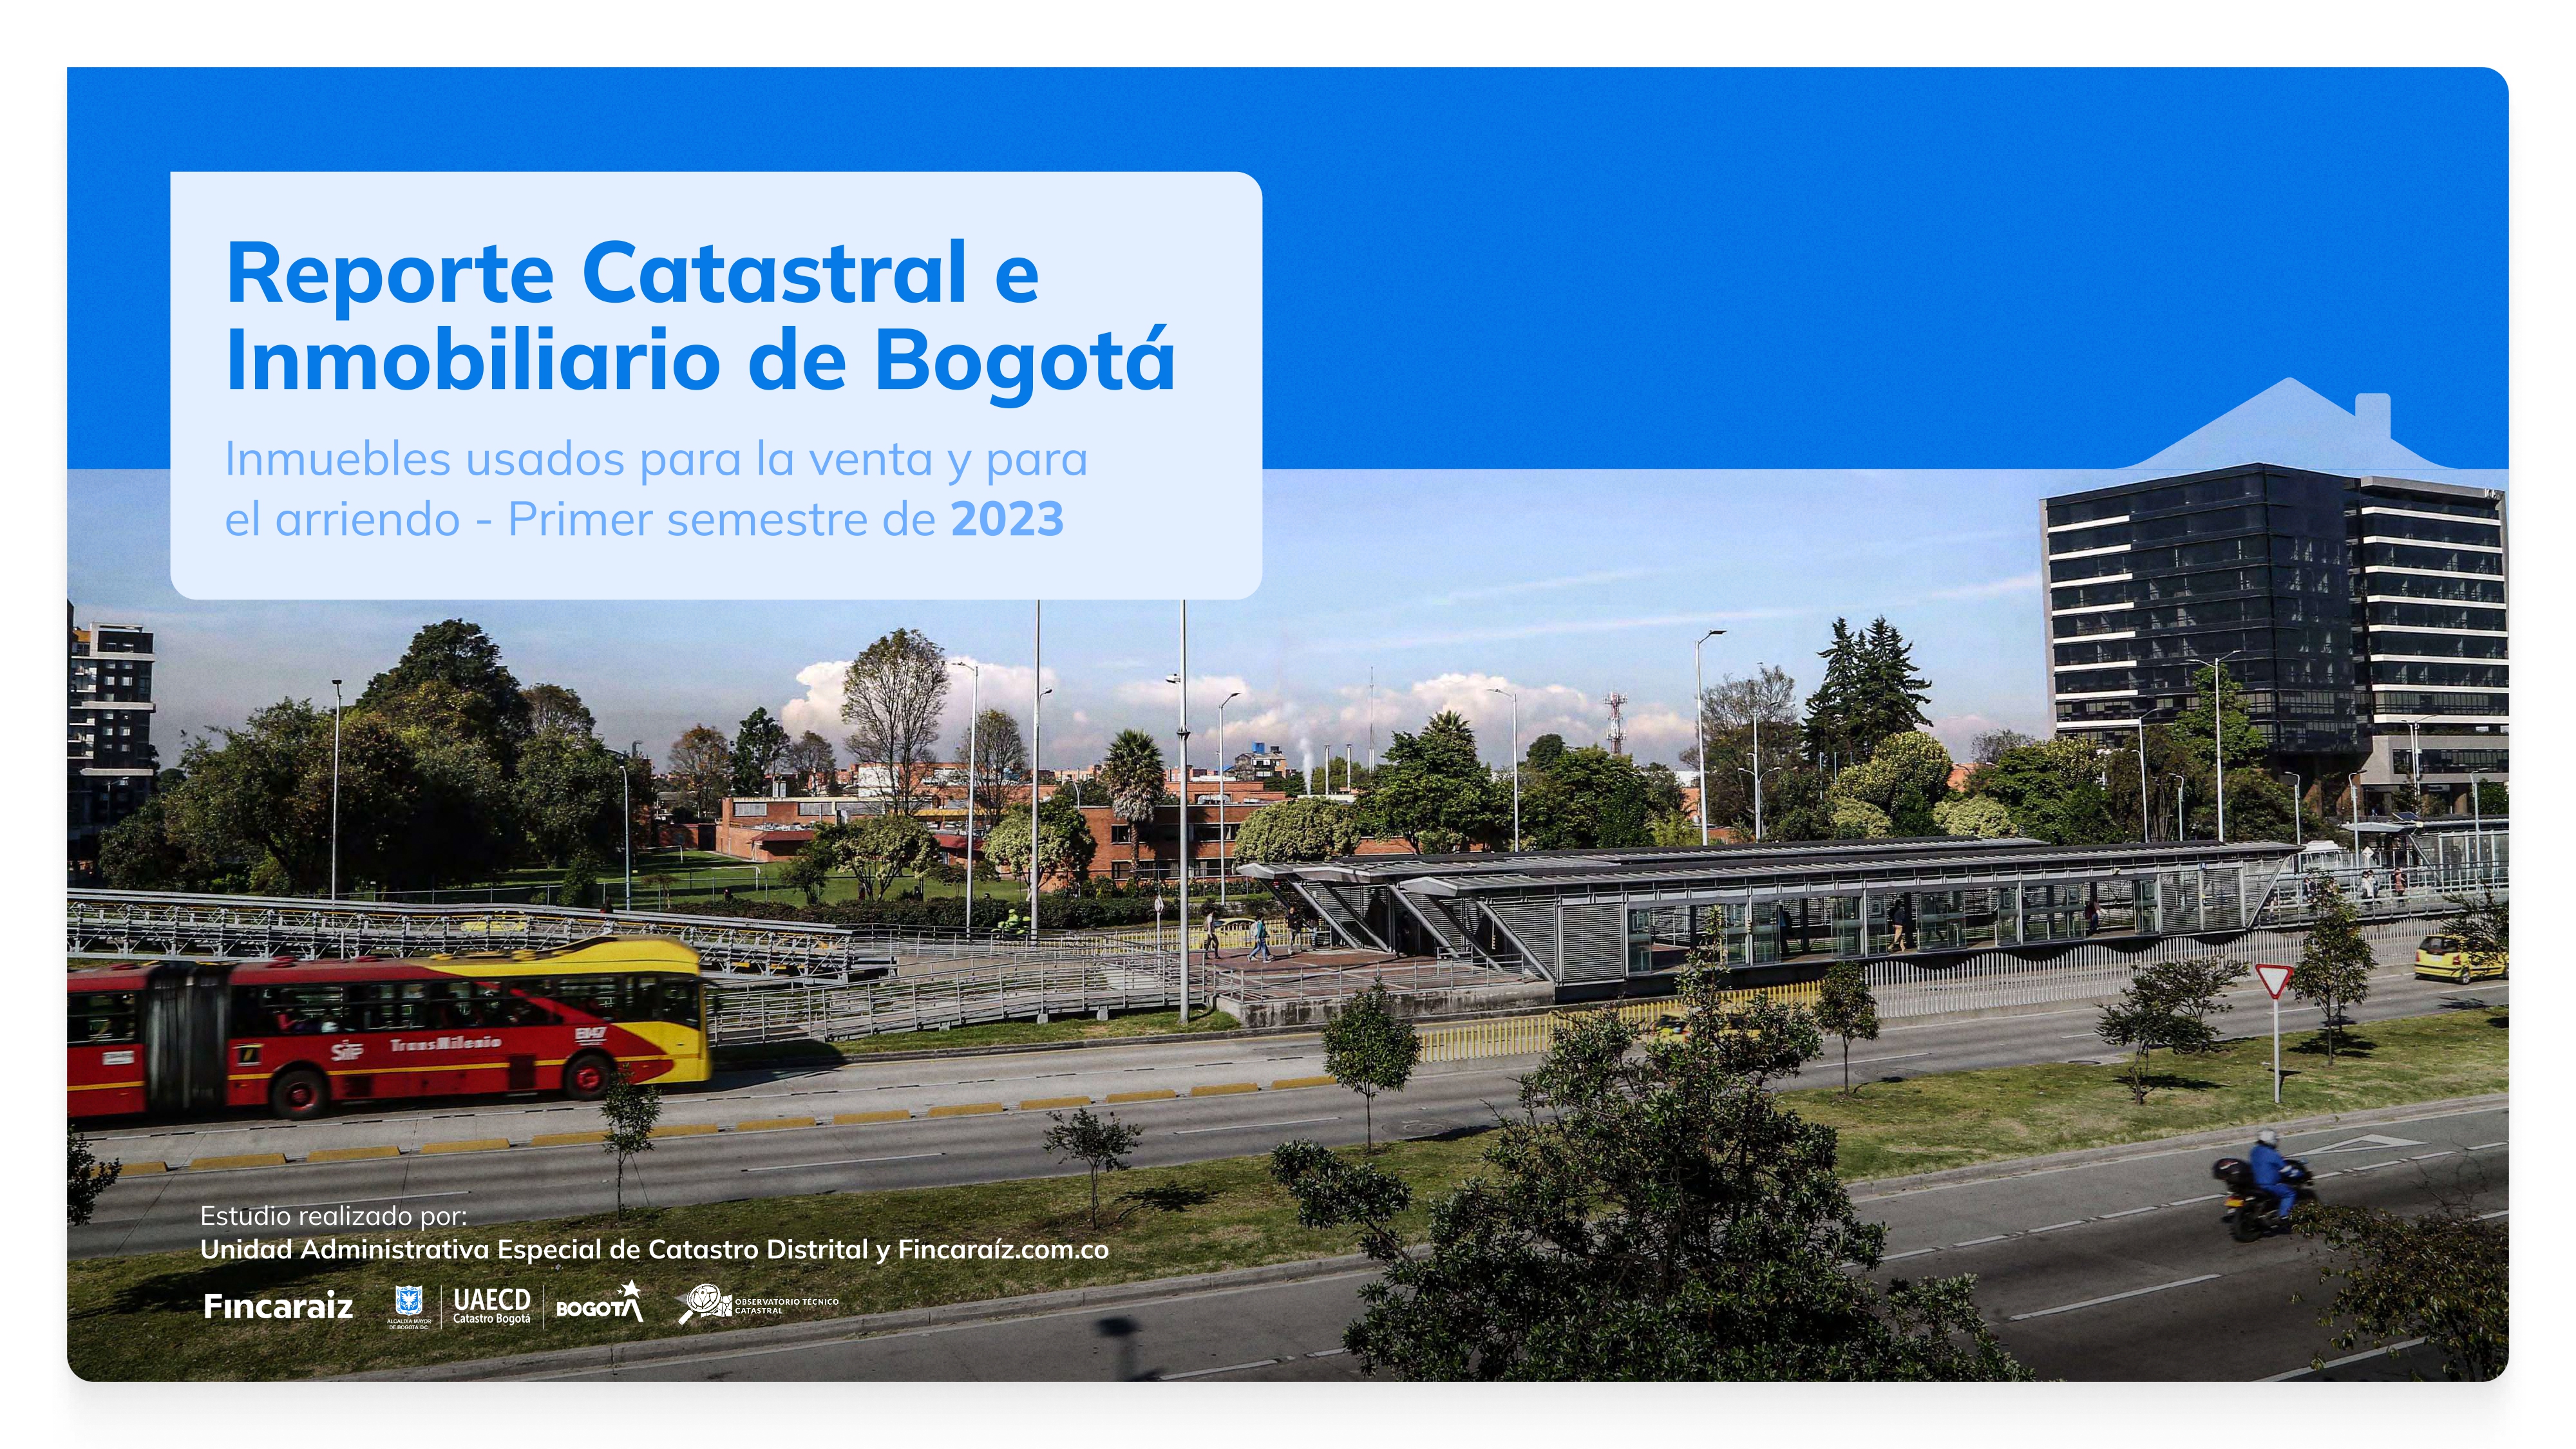 Reporte Catastral e Inmobiliario de Bogotá 2023